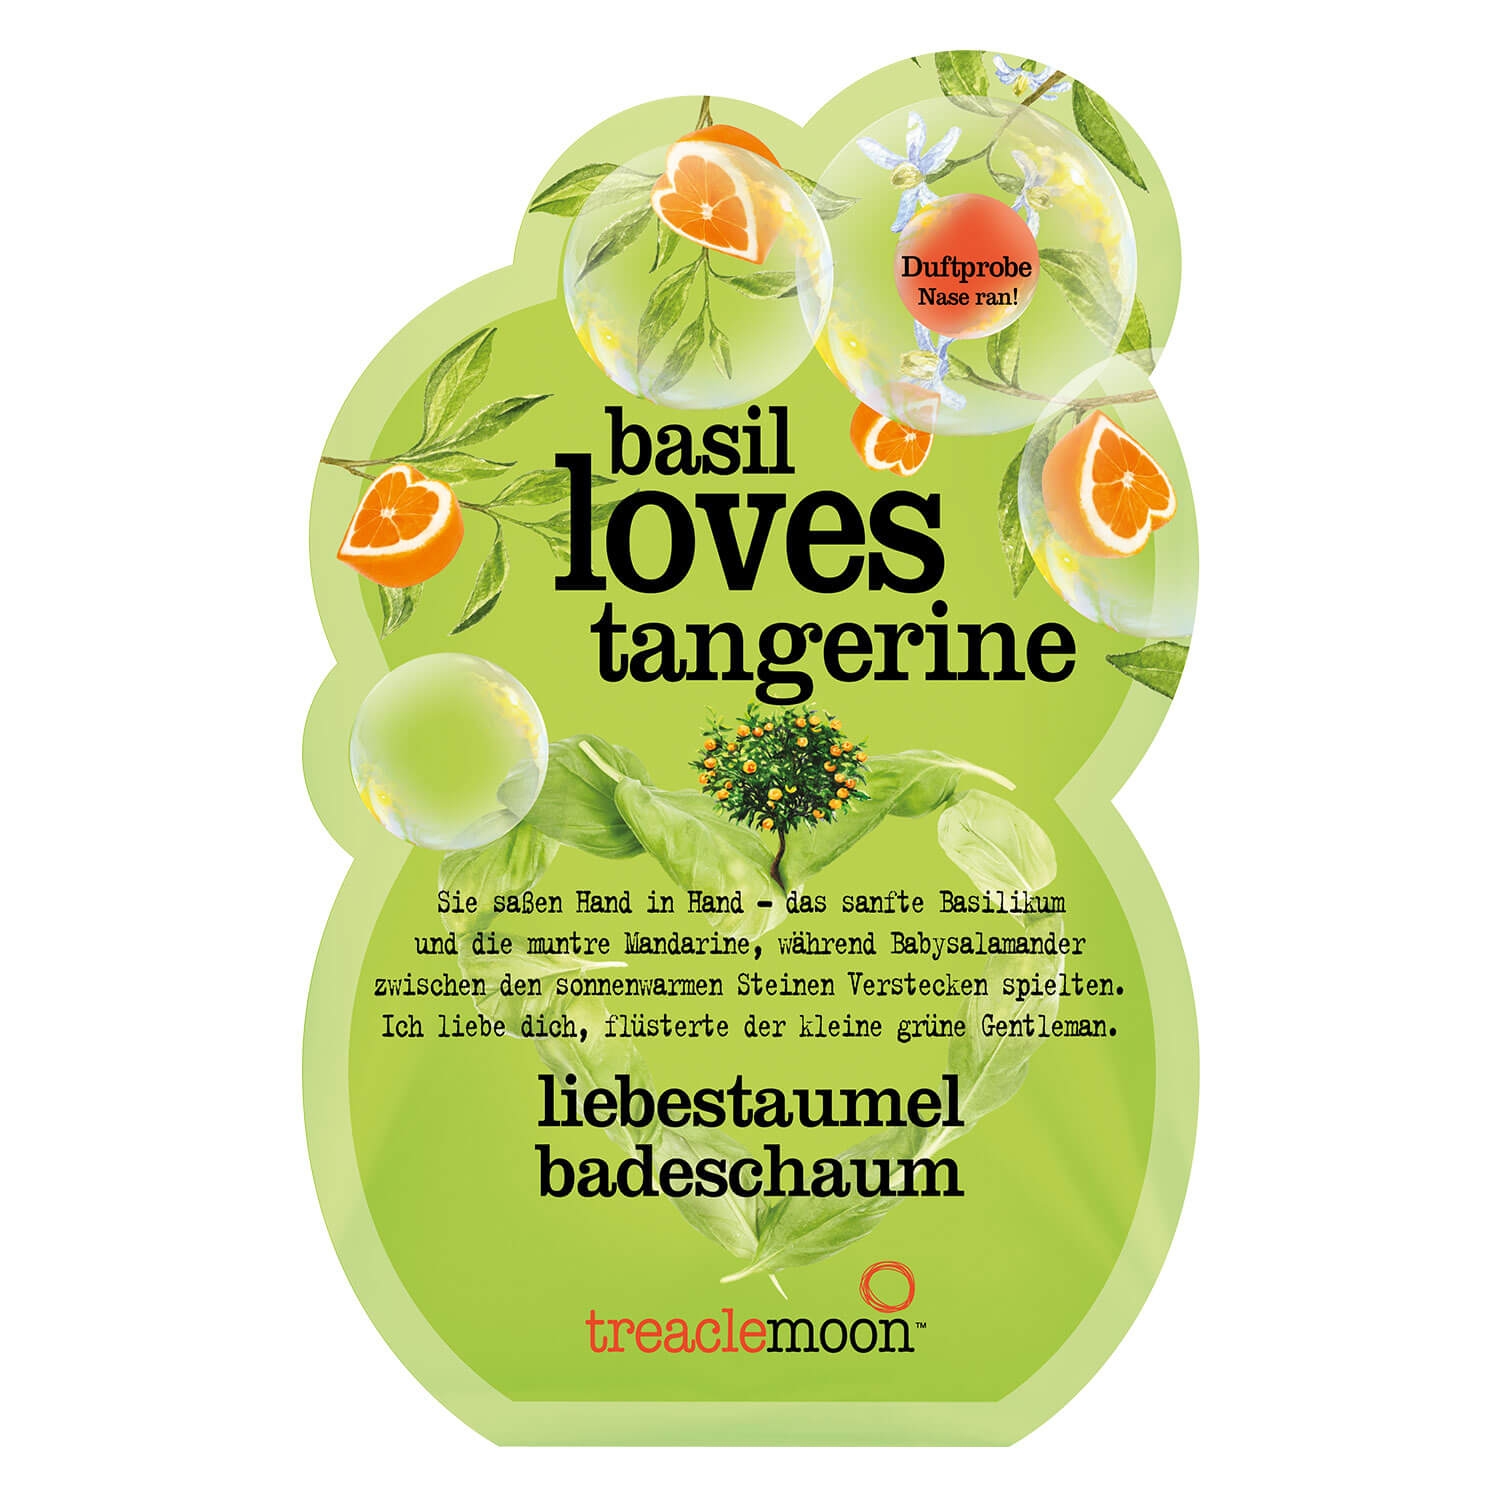 Product image from treaclemoon - basil loves tangerine liebestaumel badeschaum